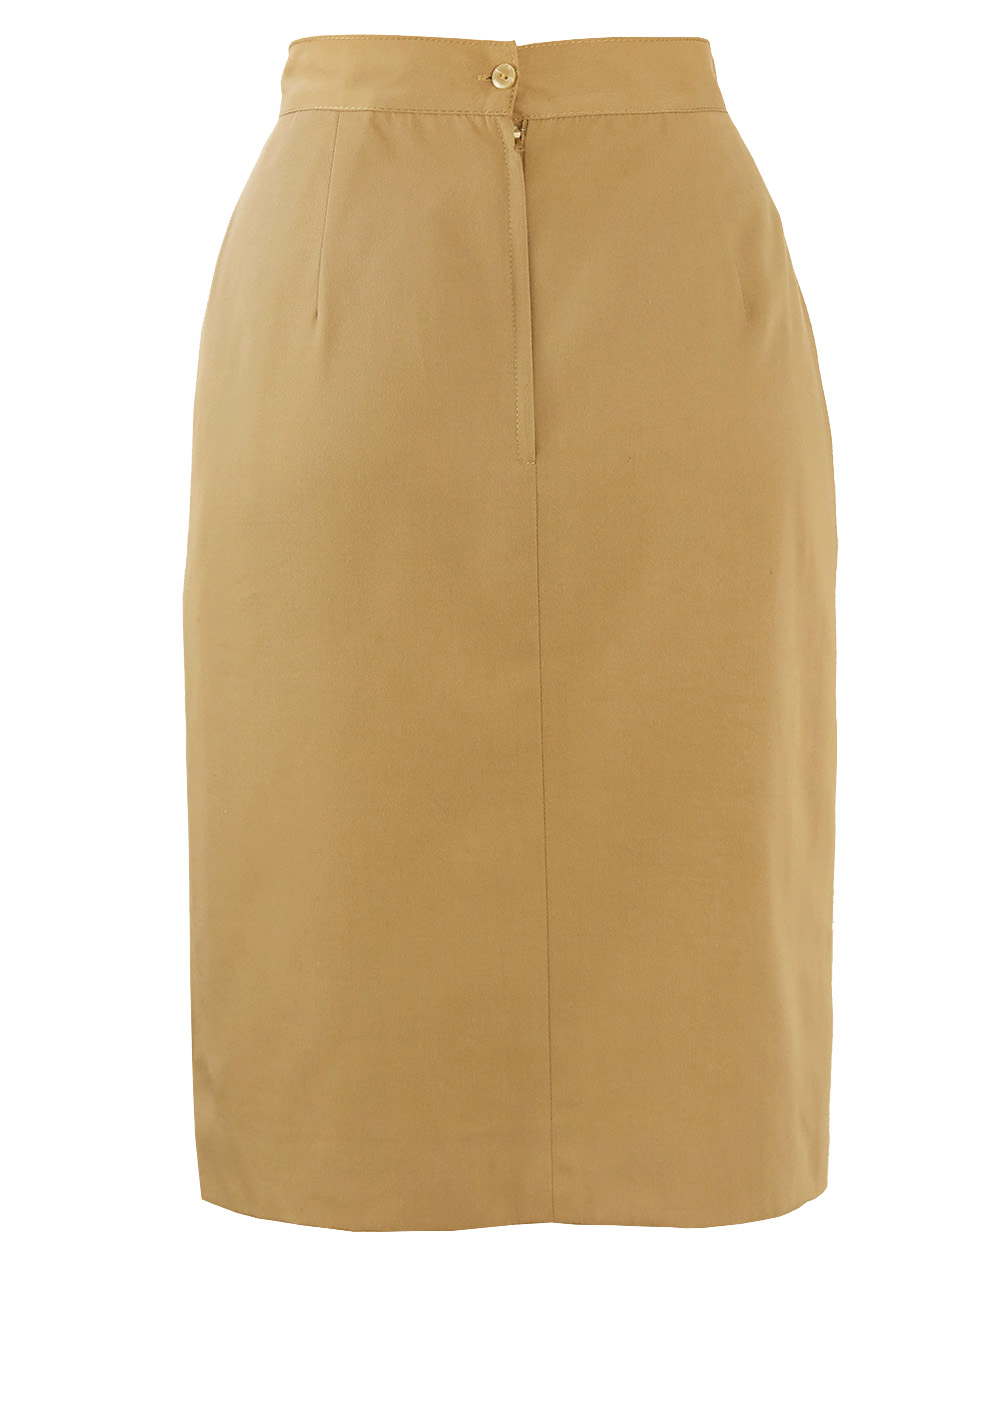 Knee Length Fawn Coloured Pencil Skirt with Asymmetric Waistband - S ...